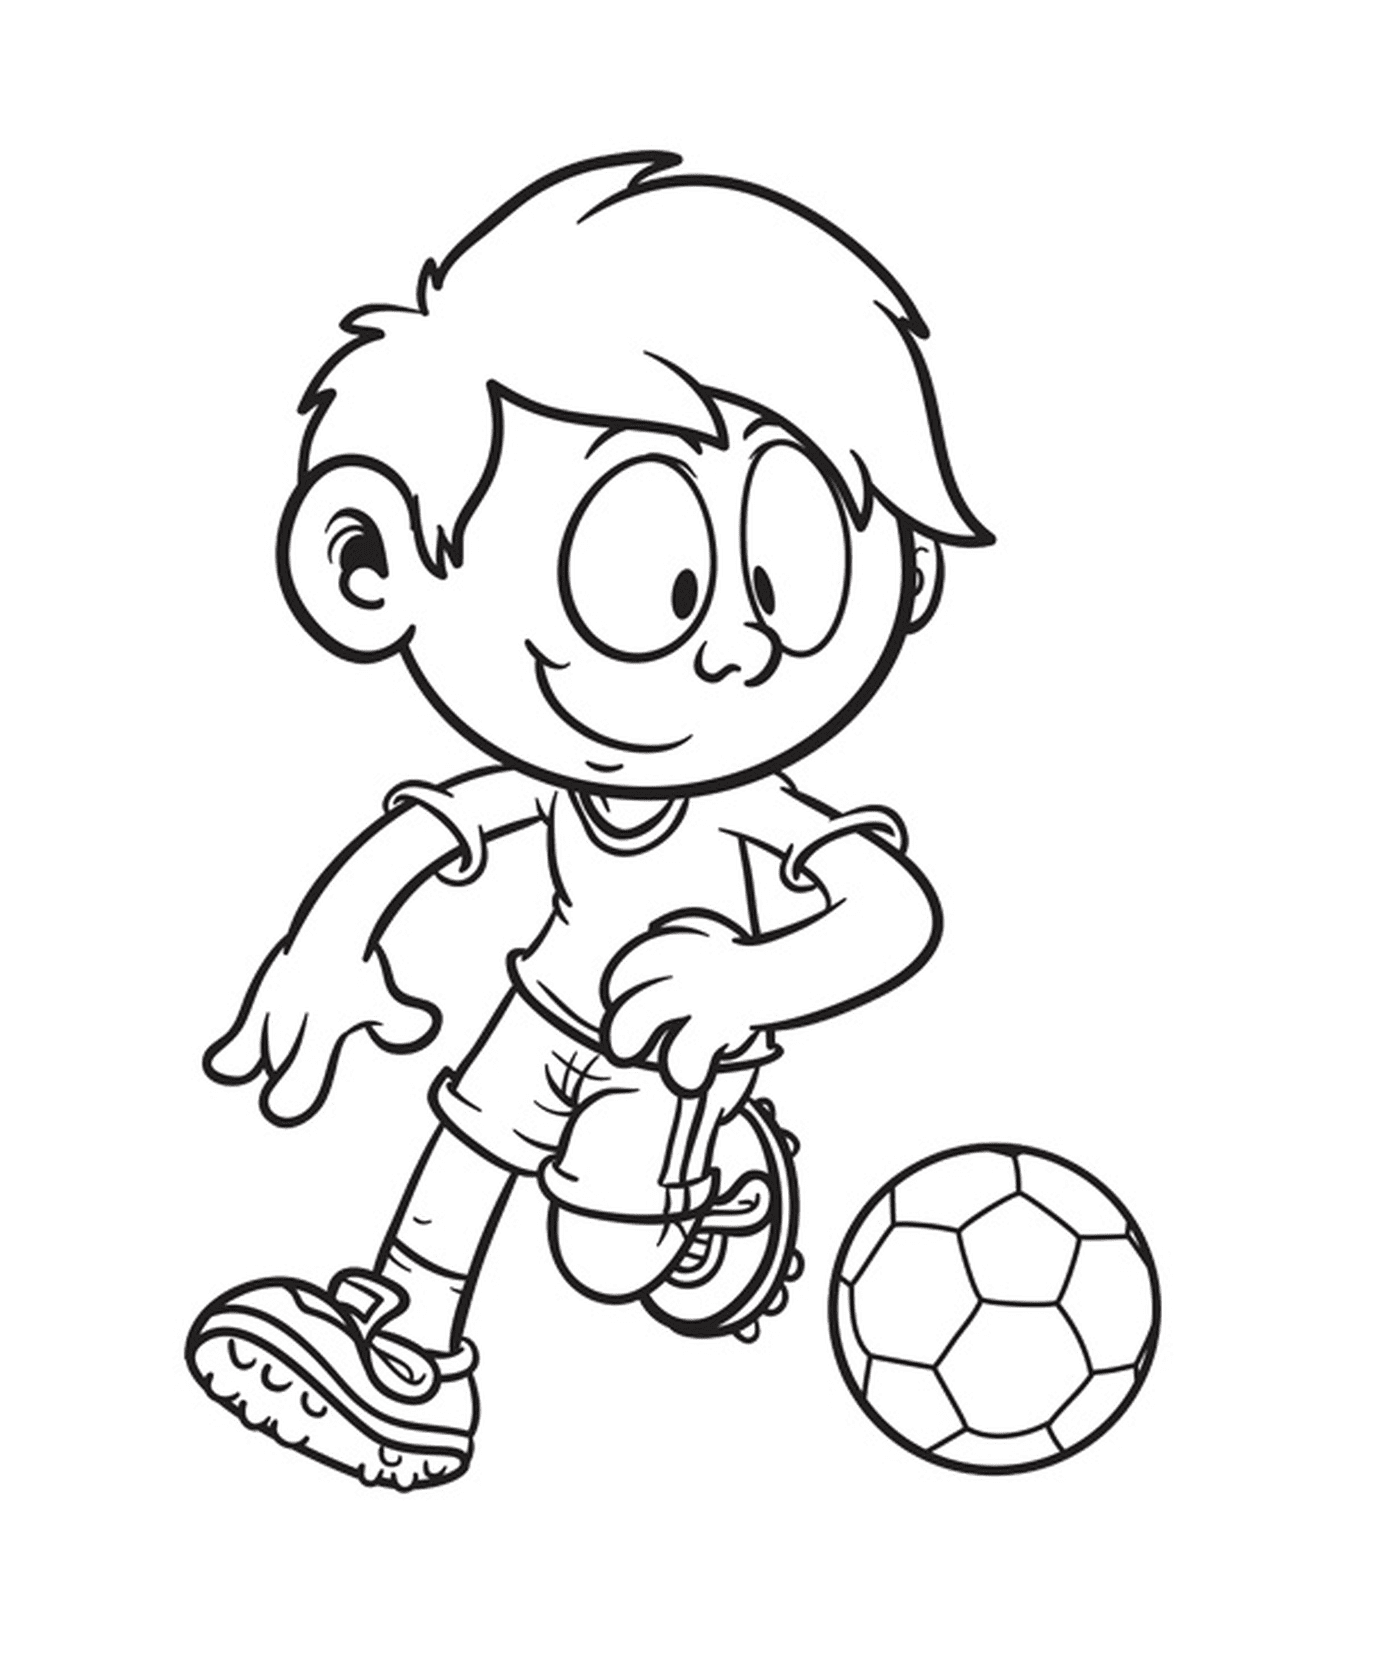  Menino de dez anos de idade jogando futebol 